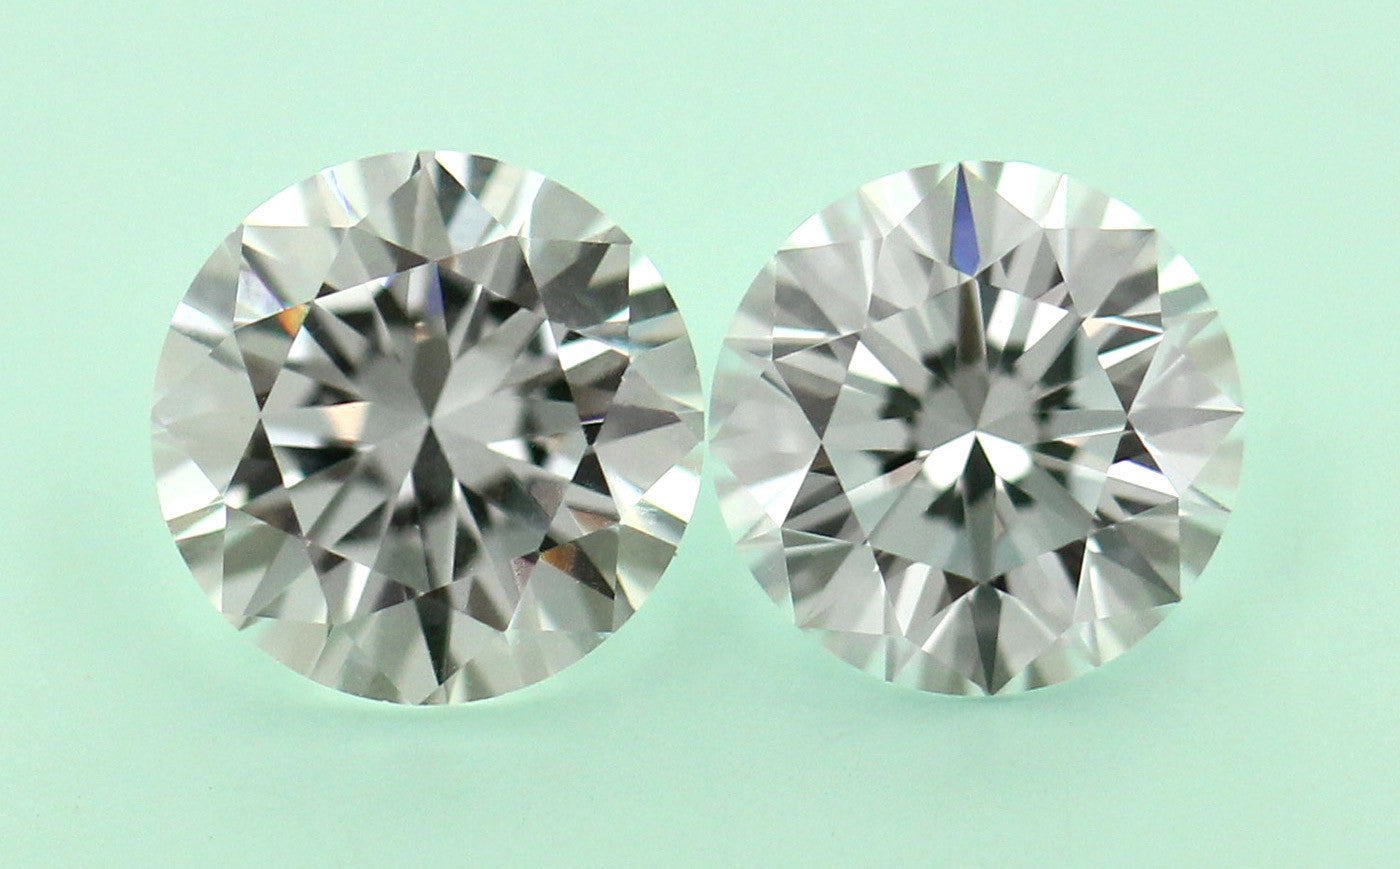 실험실에서 제작한 다이아몬드와 큐빅 지르코니아